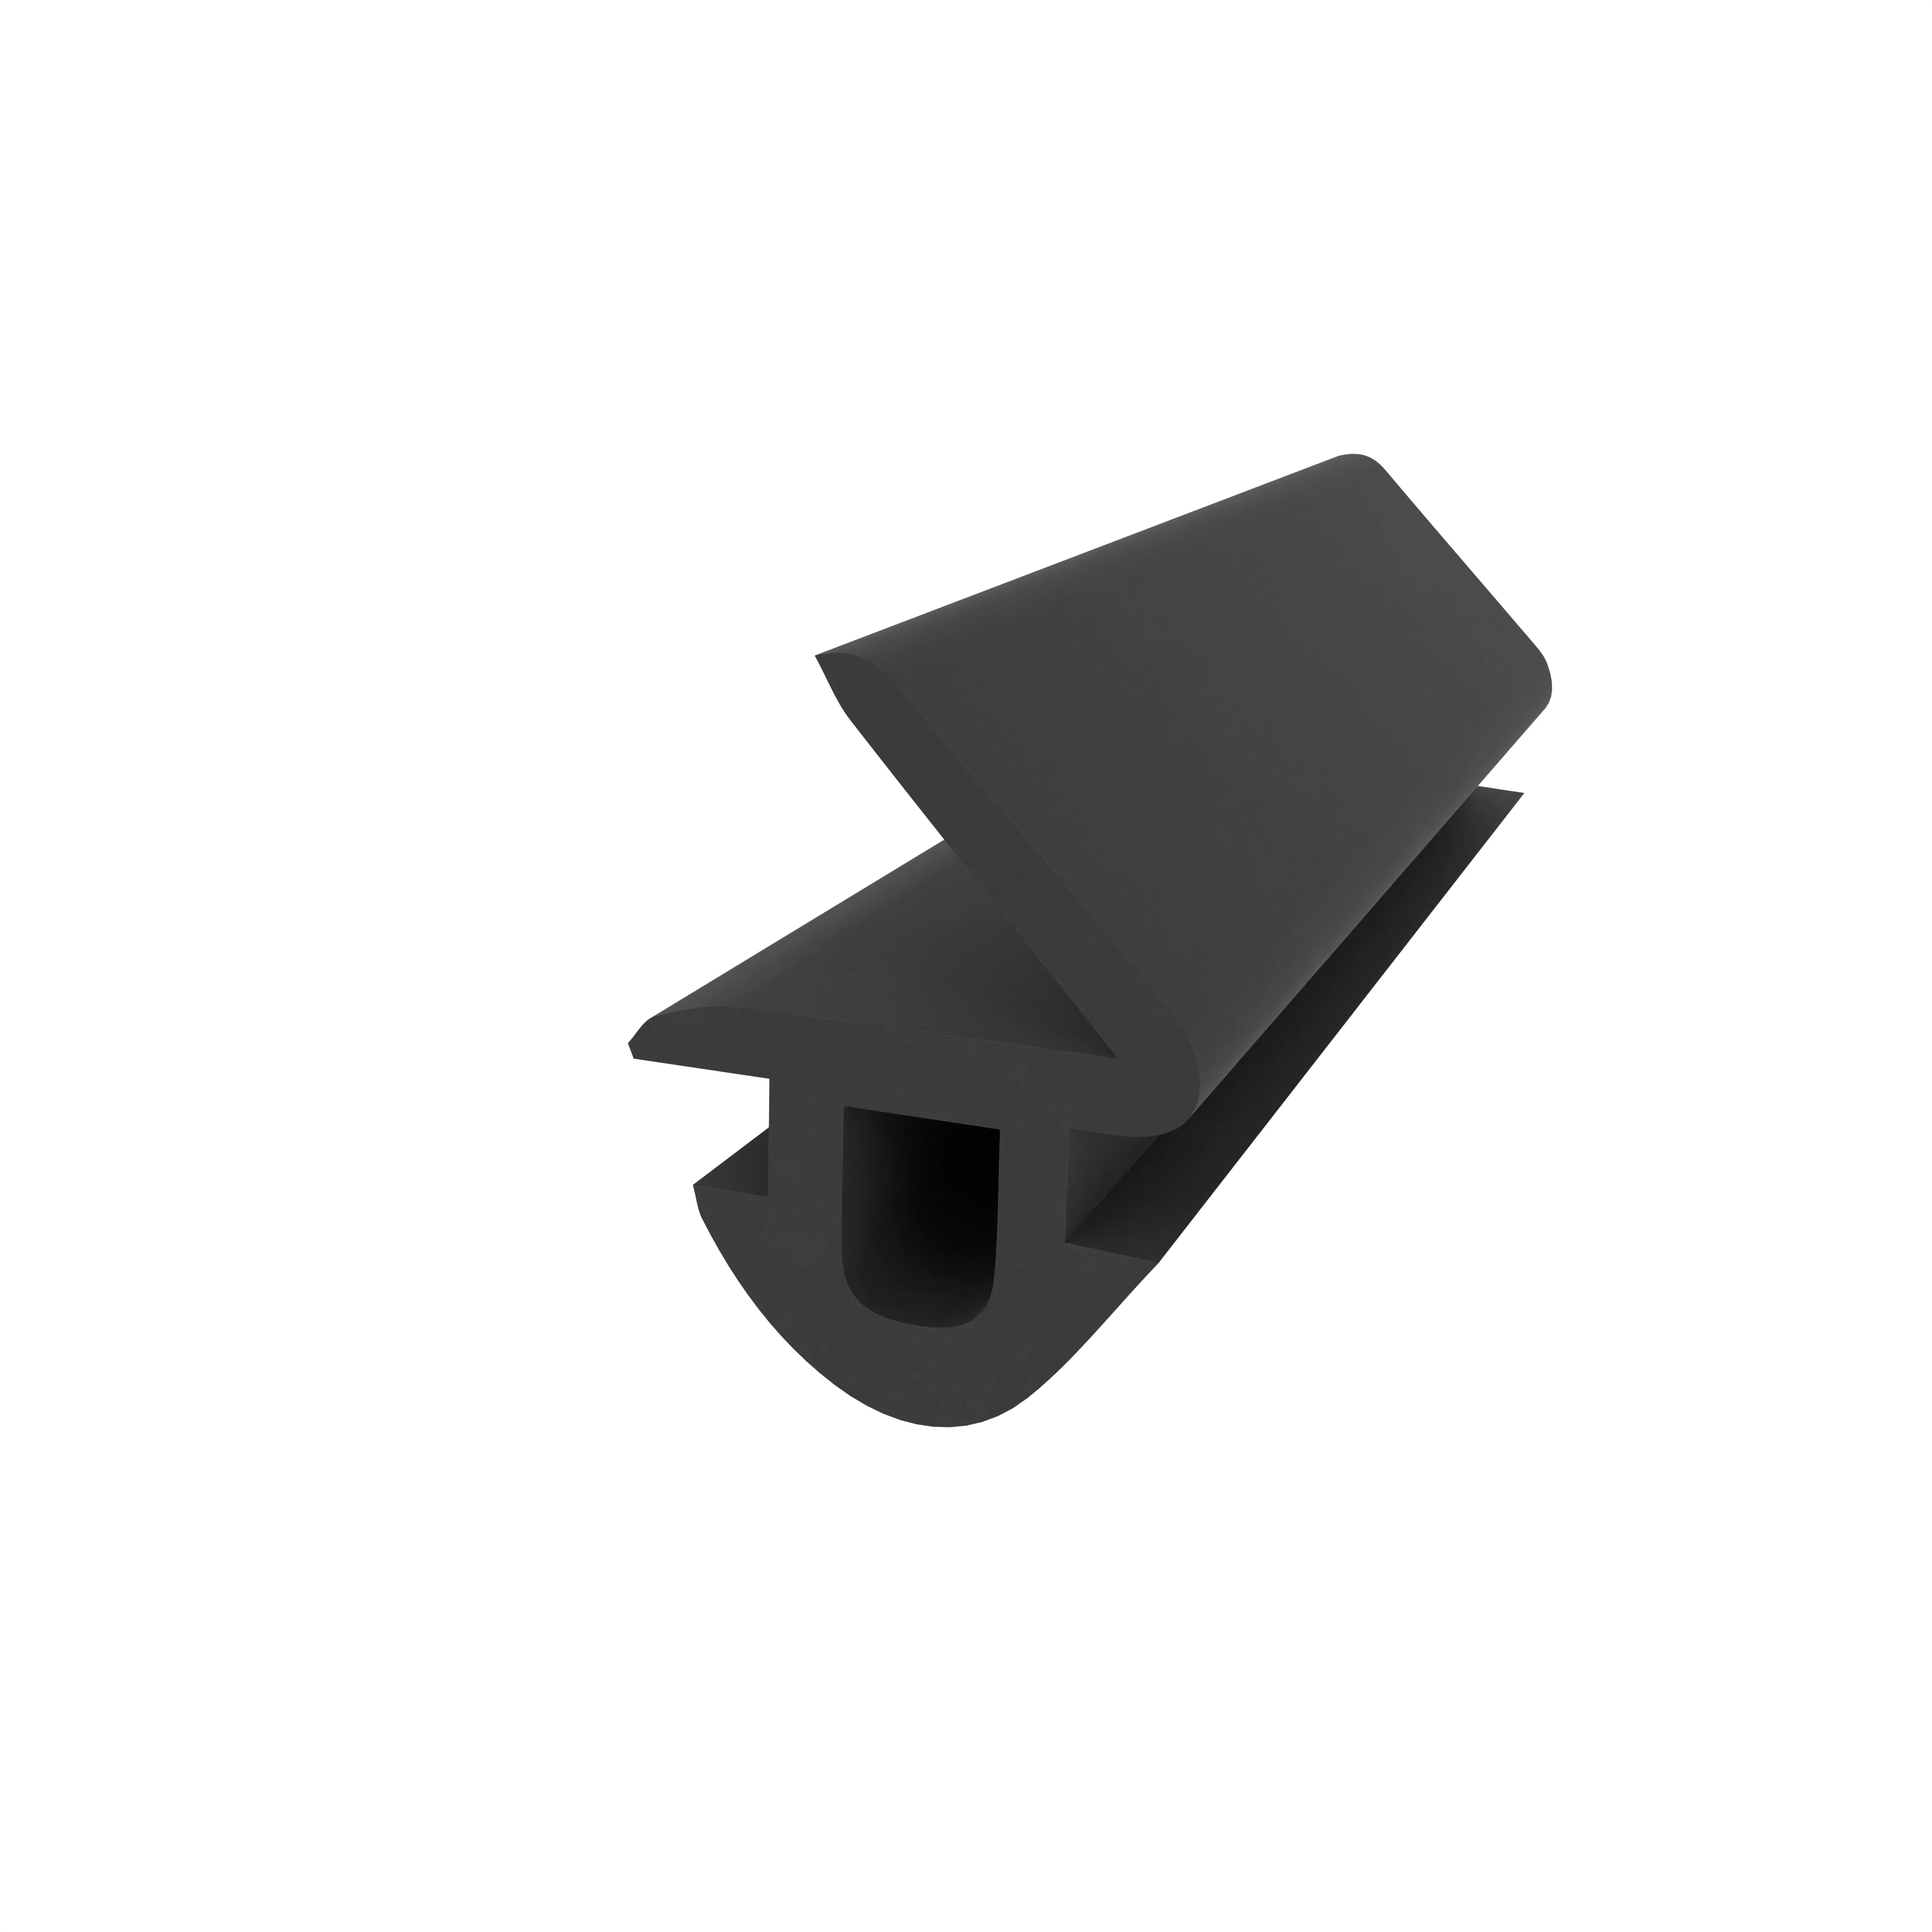 Anschlagdichtung mit Lippe für Hueck Fenster | 9 mm Höhe | Farbe: schwarz 